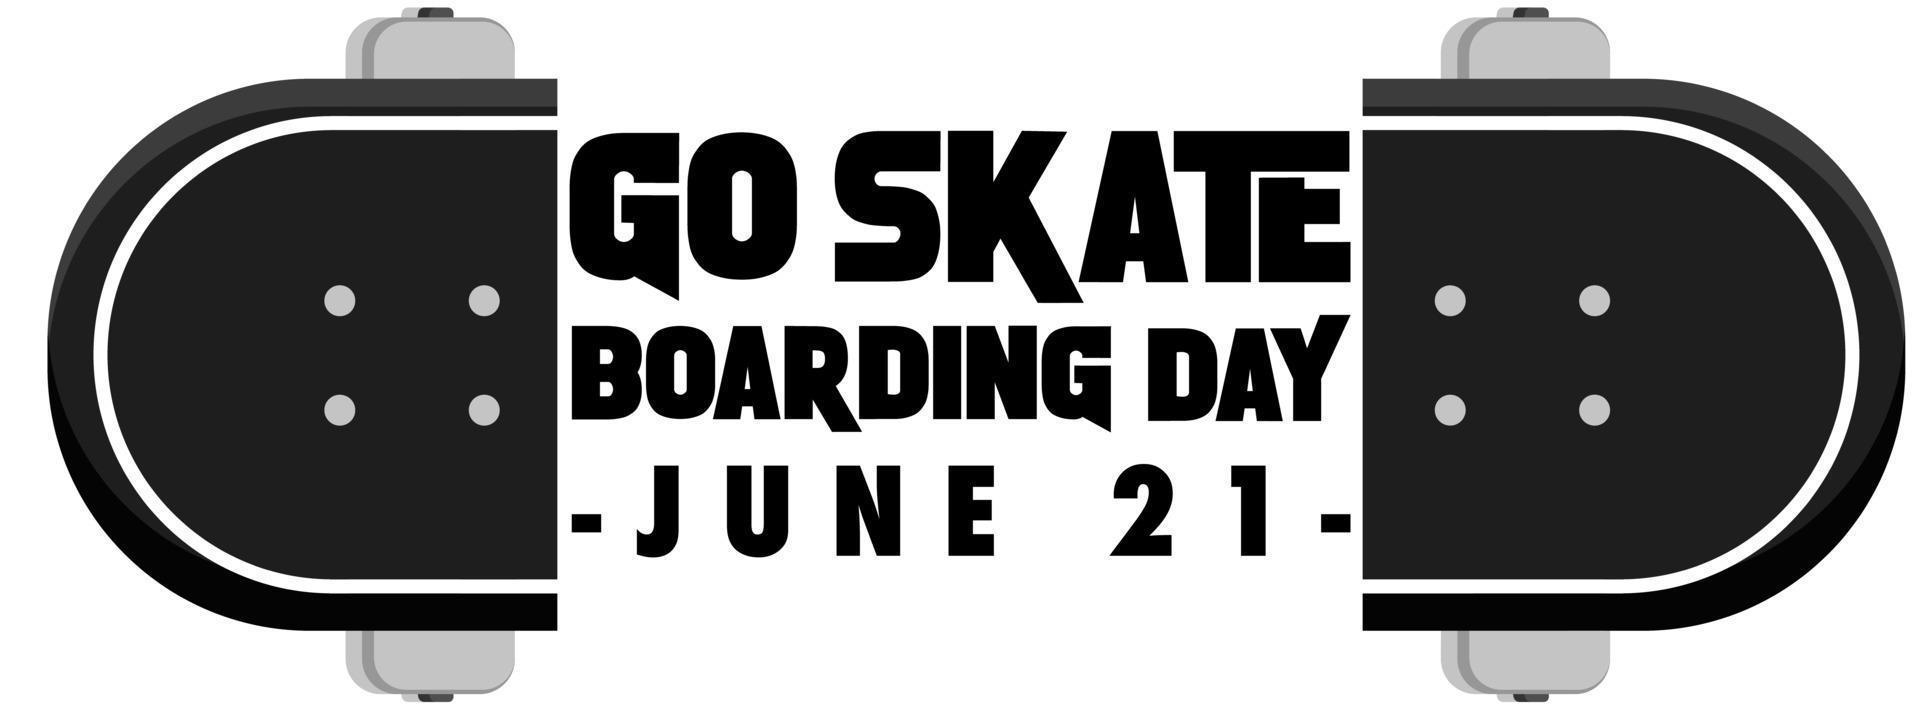 go skateboard giorno di carattere sul banner di skateboard isolato vettore